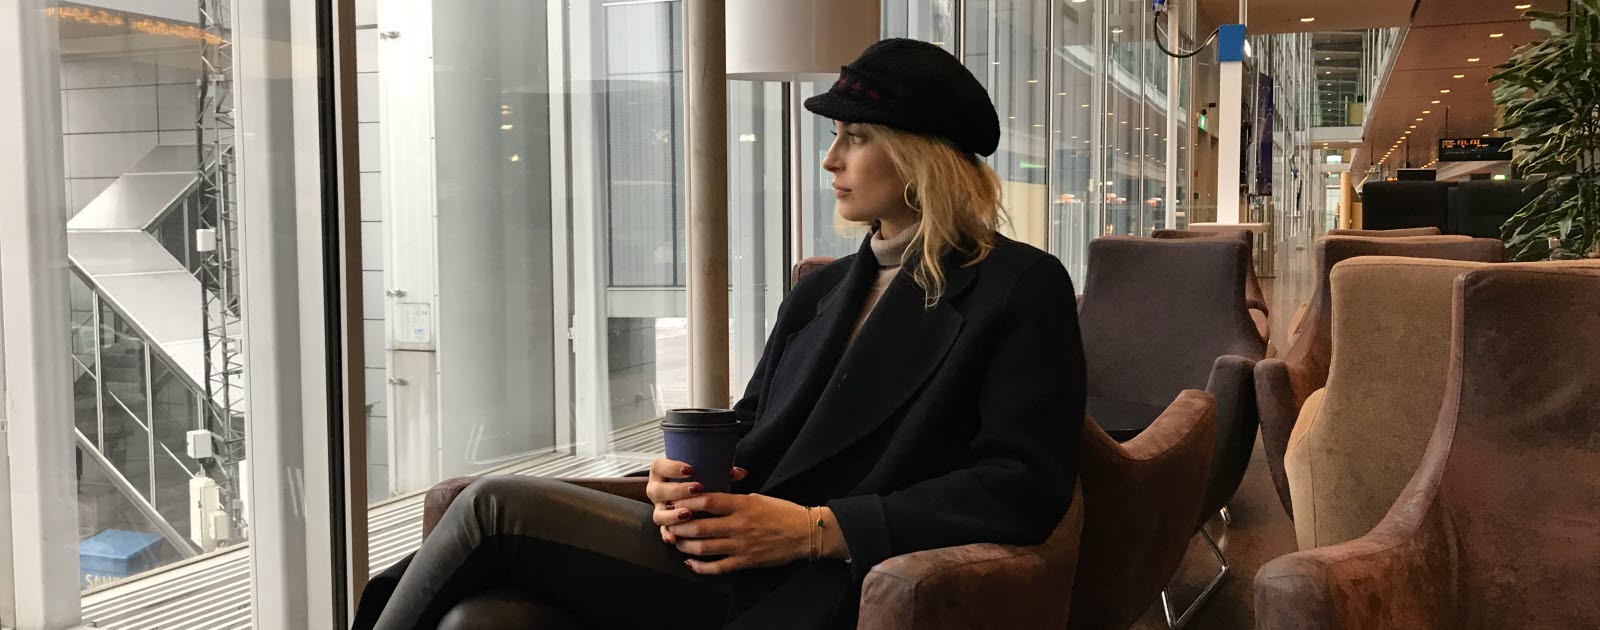 Cissi Forss sitter i en fåtölj på Arlanda med en kaffemugg och kollar ut mot flygplanen.